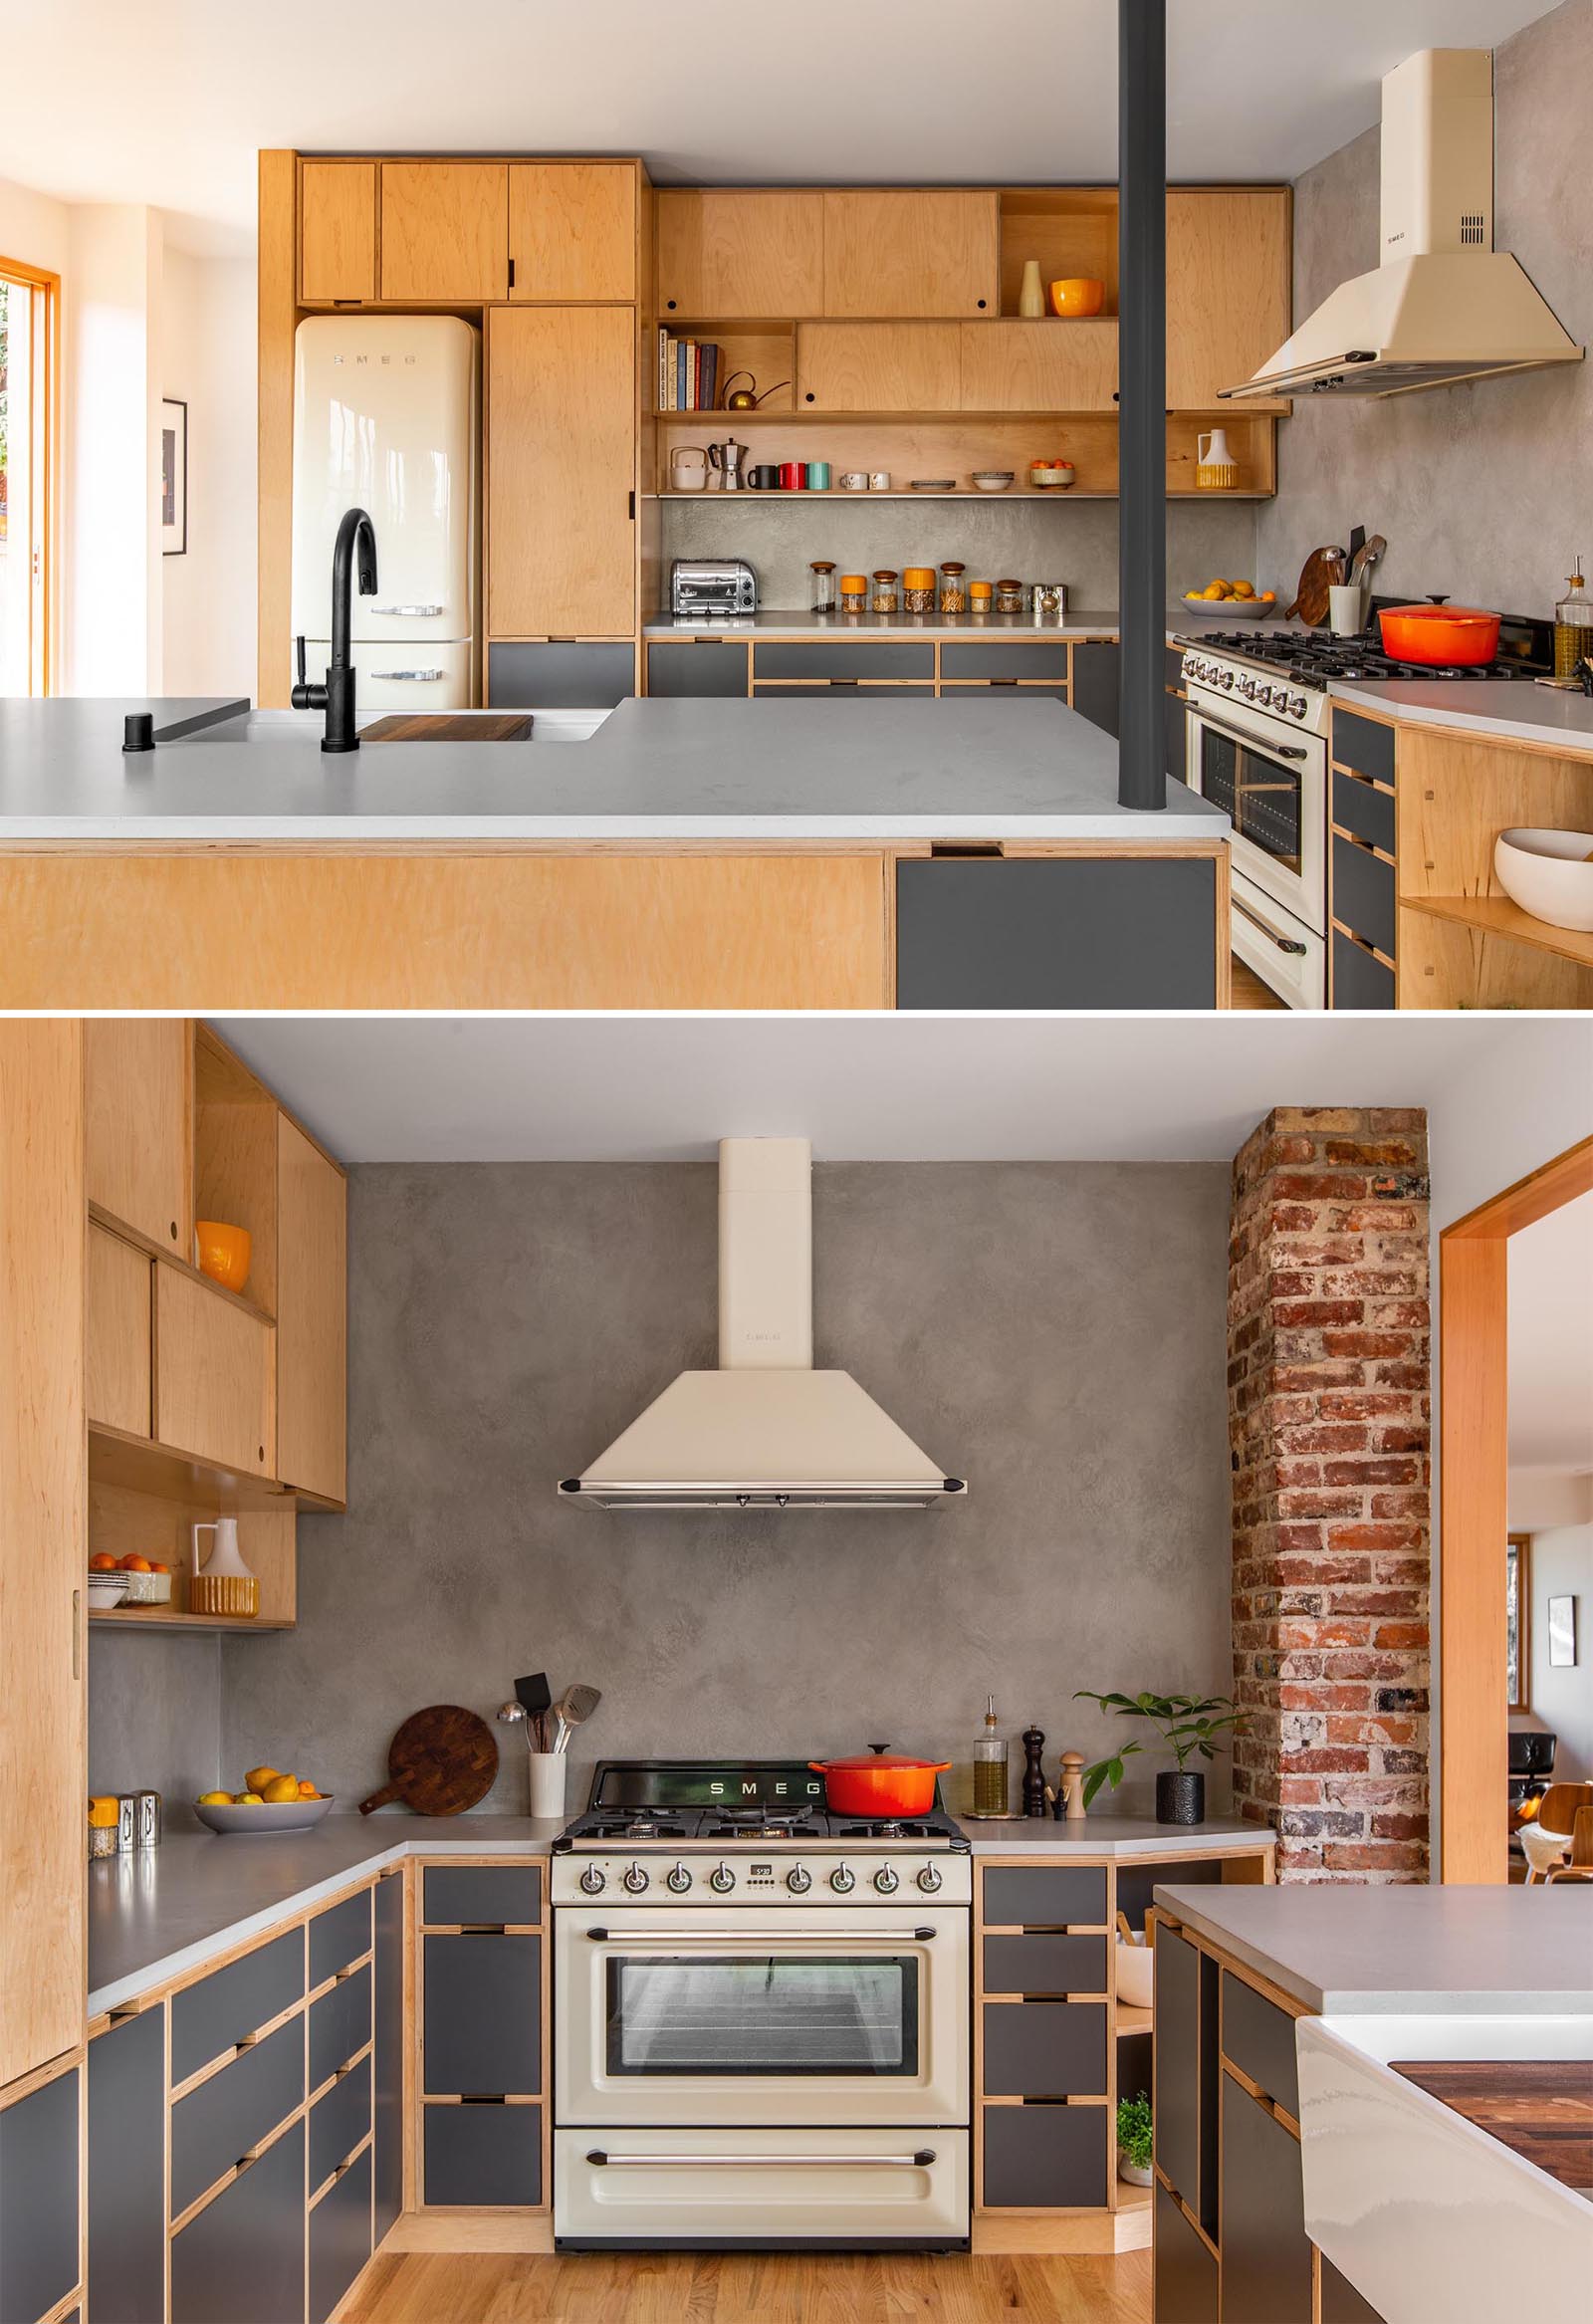 Кухня, спроектированная по индивидуальному заказу, с деревянными шкафами, созданными так, чтобы максимально использовать заднюю стену.